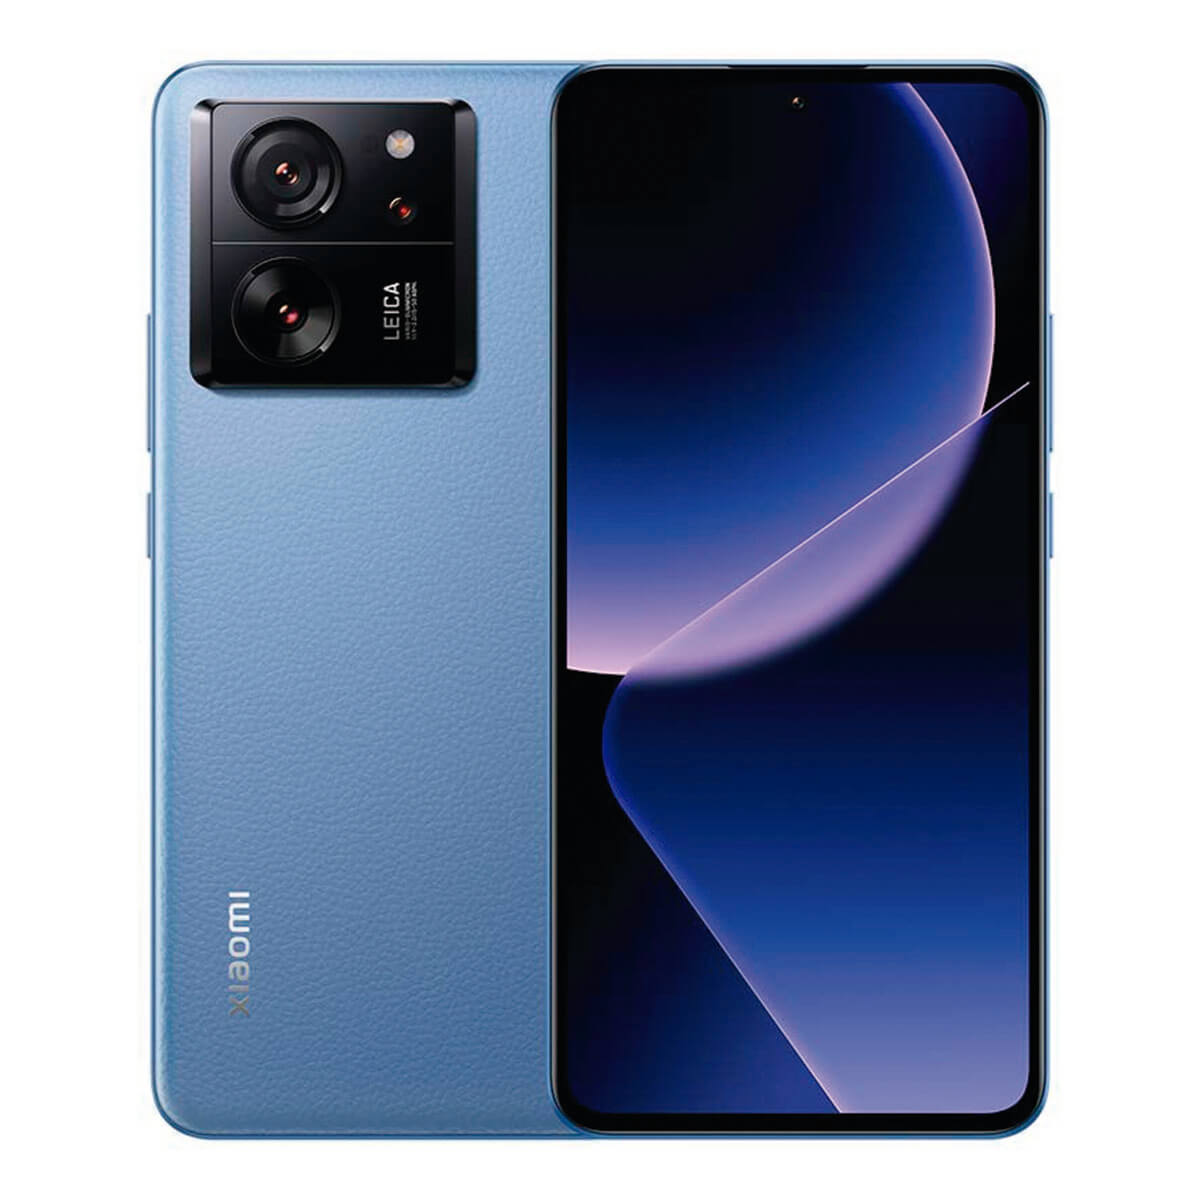 XIAOMI 13T Pro 512 GB Dual SIM Blau